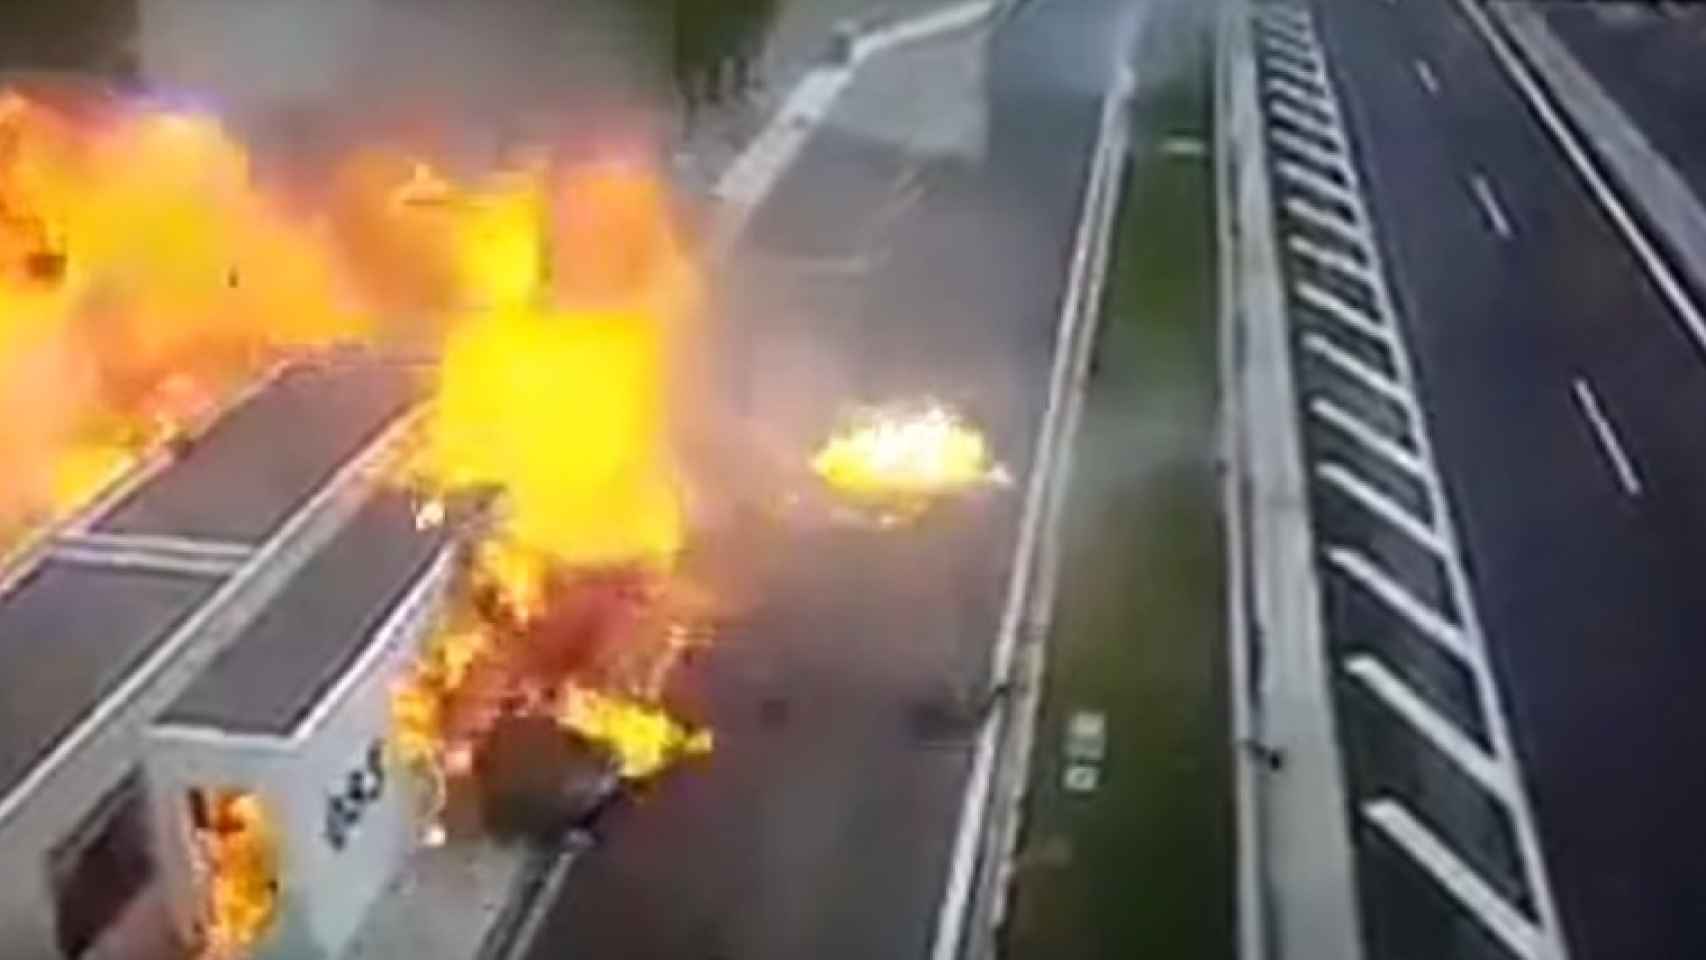 Los dos coches, envueltos en llamas tras el brutal accidente ocurrido en Atenas.